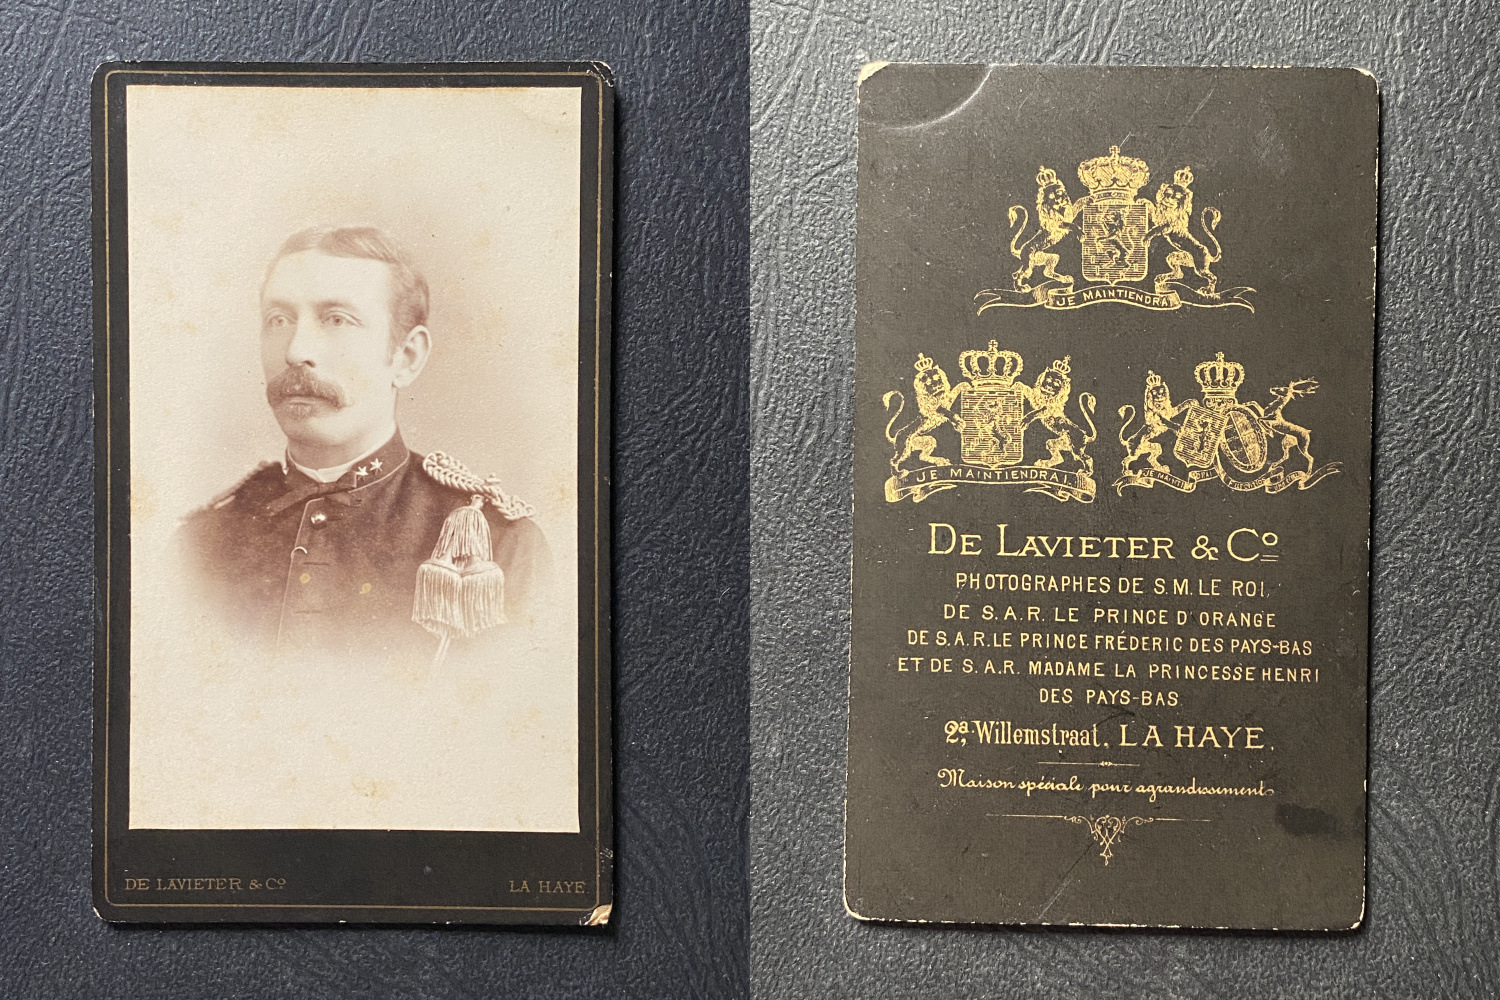 De Lavieter, La Haye, Jeune homme moustachu en uniforme militaire, circa  1890 by Photographie originale / Original photograph: (1890) Photograph |  photovintagefrance